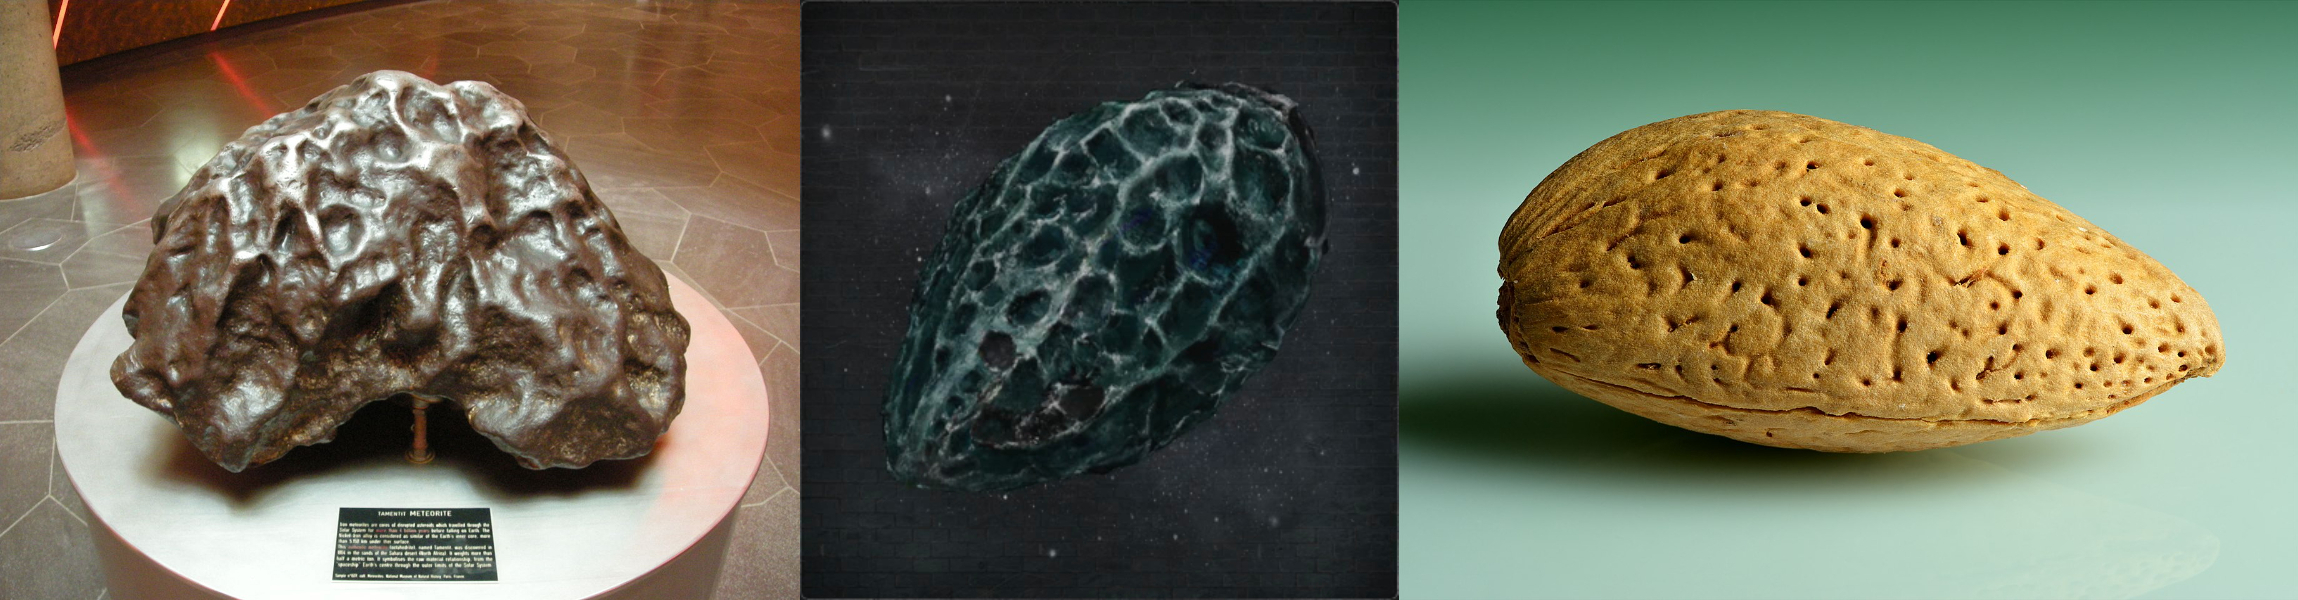 左：陨铁“Tamentit”，中：扁桃石，右：扁桃壳